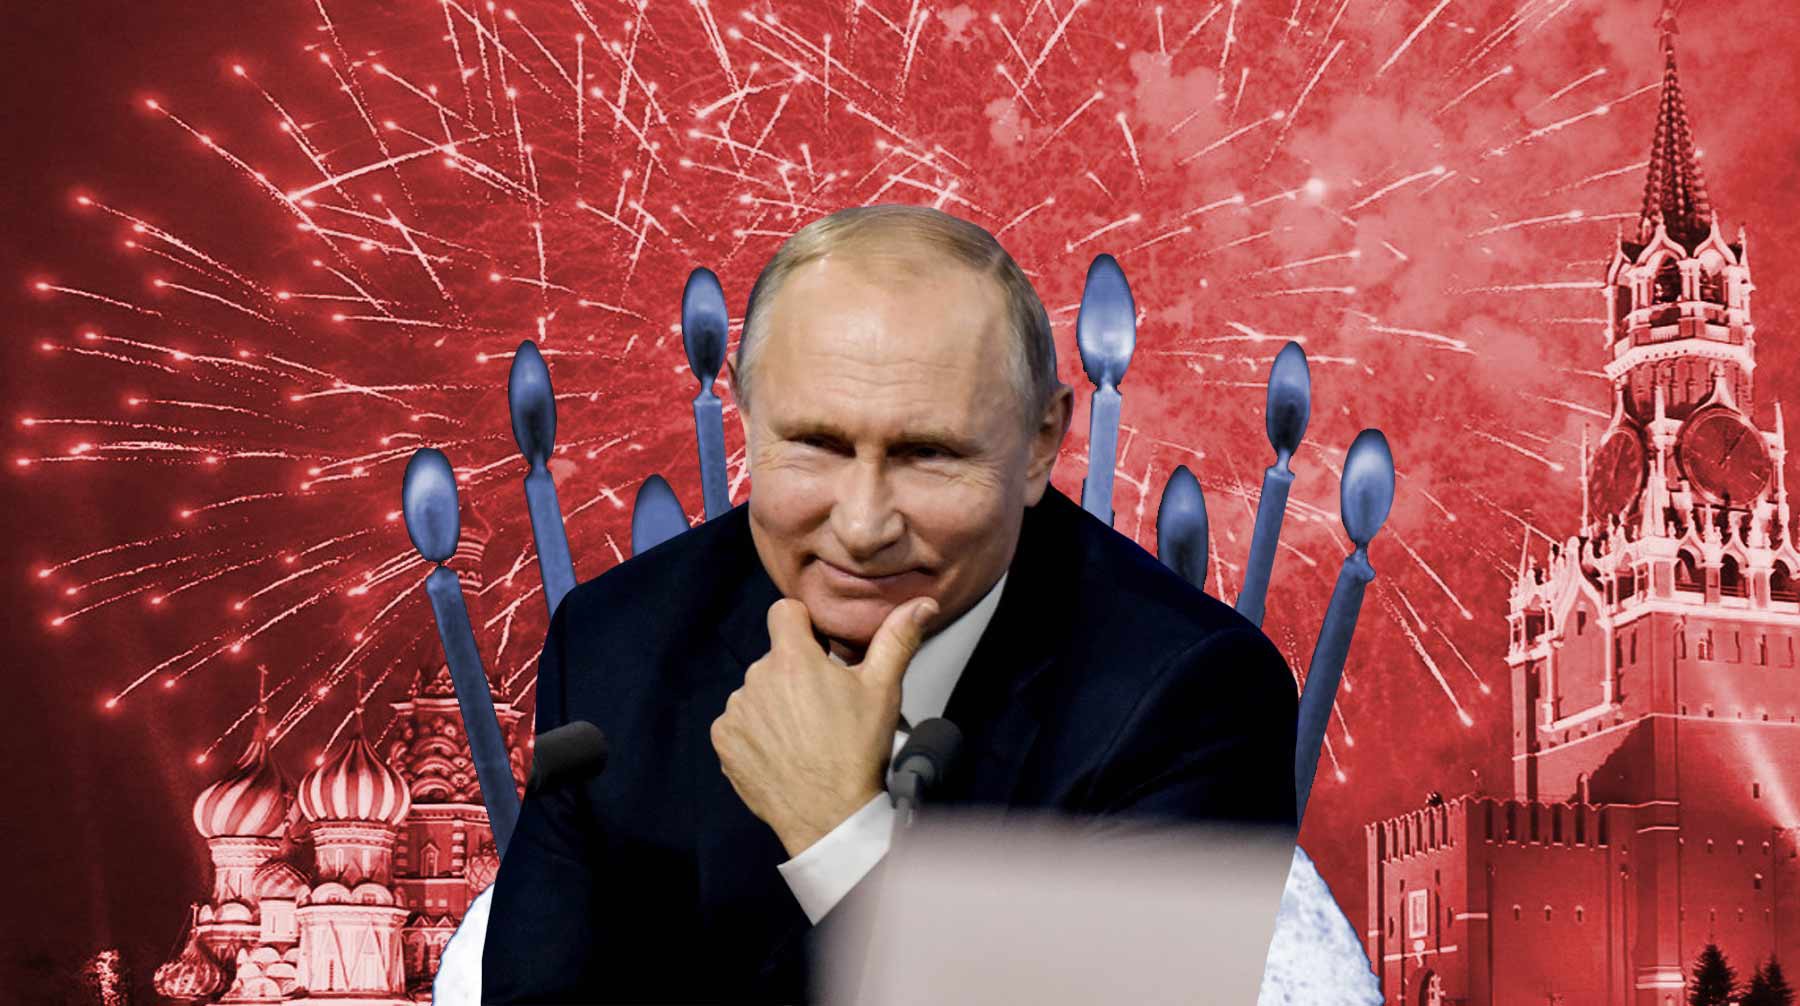 День рождения Путина